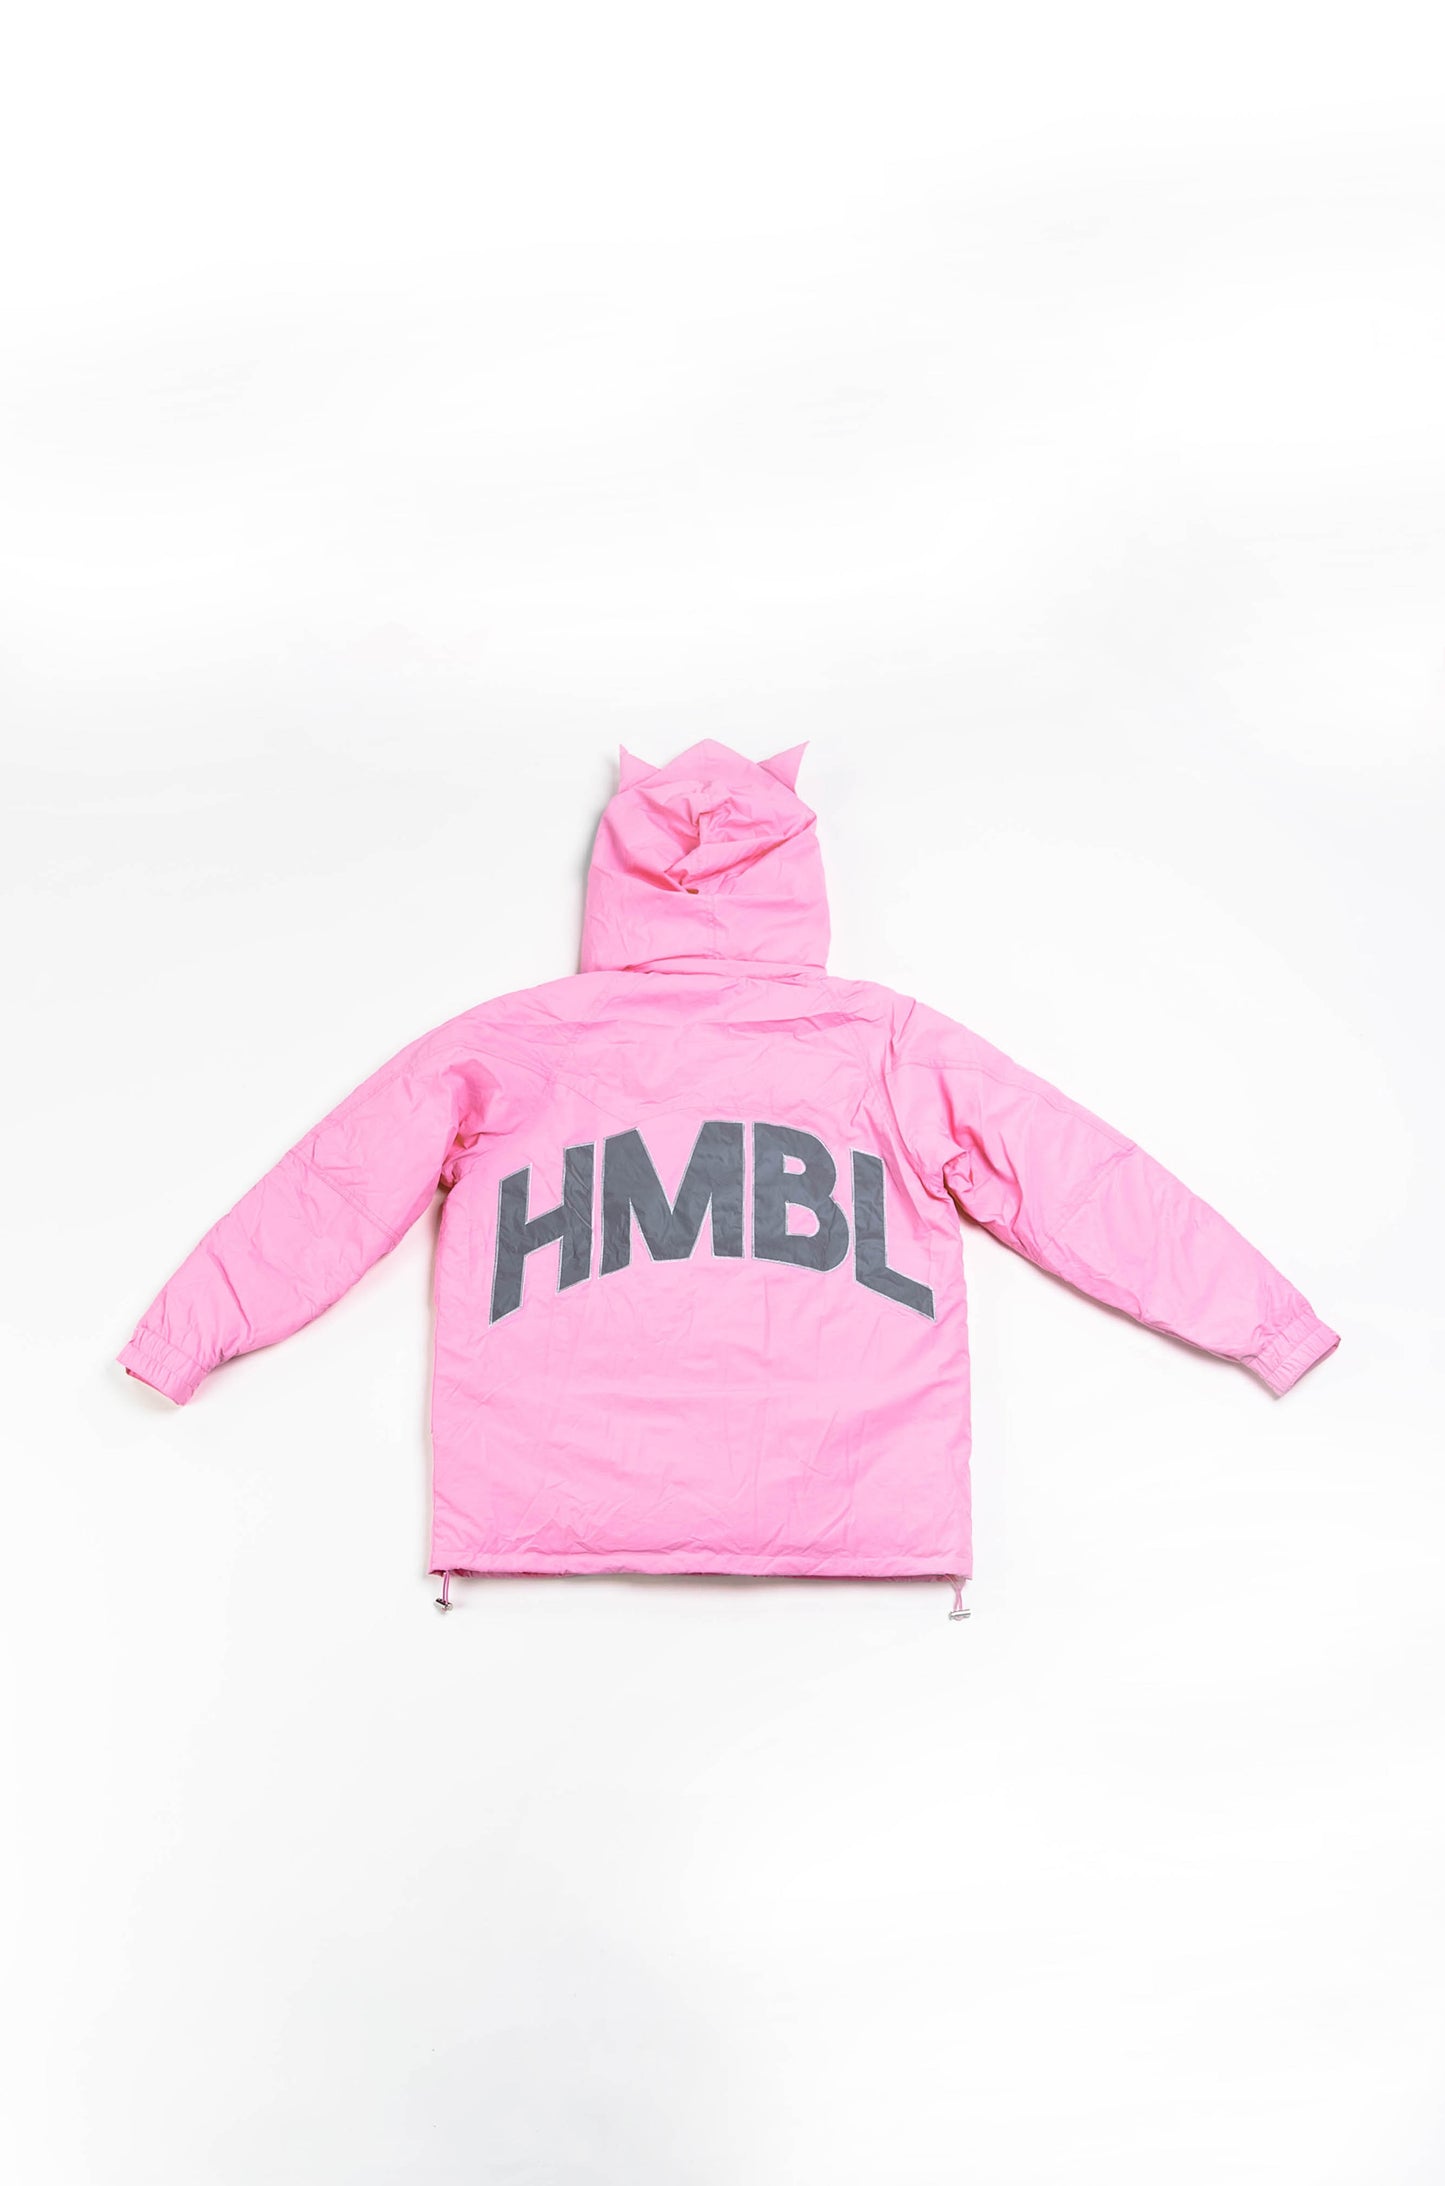 Pink reflective HMBL jacket